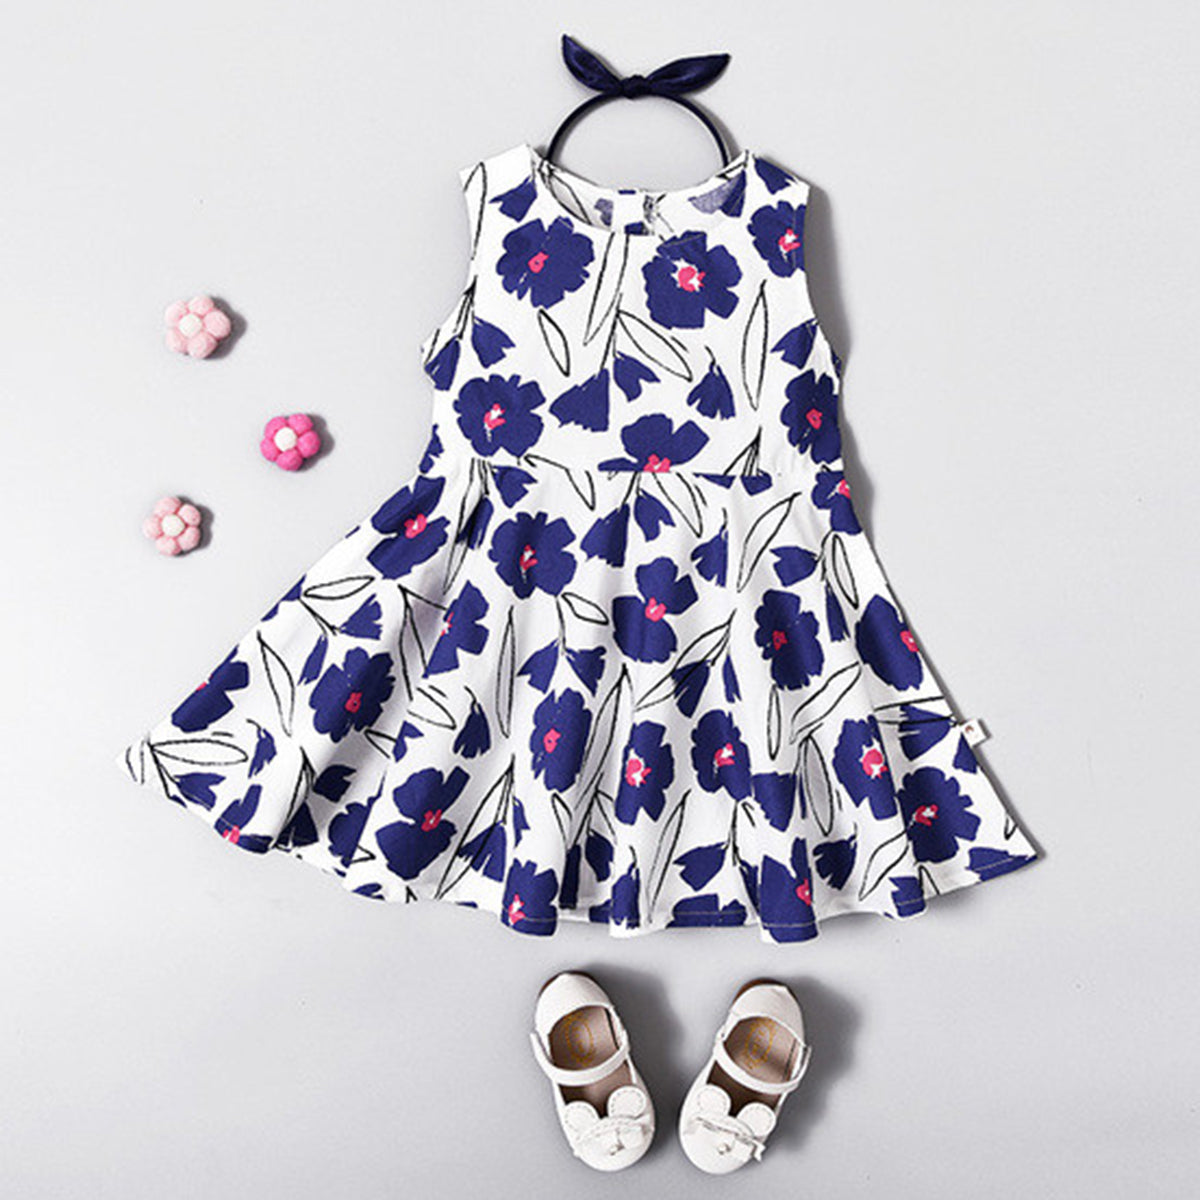 Venutaloza BabyGirl's Stylish Cotton Blue Floral Frocks & Dresses for Kids.